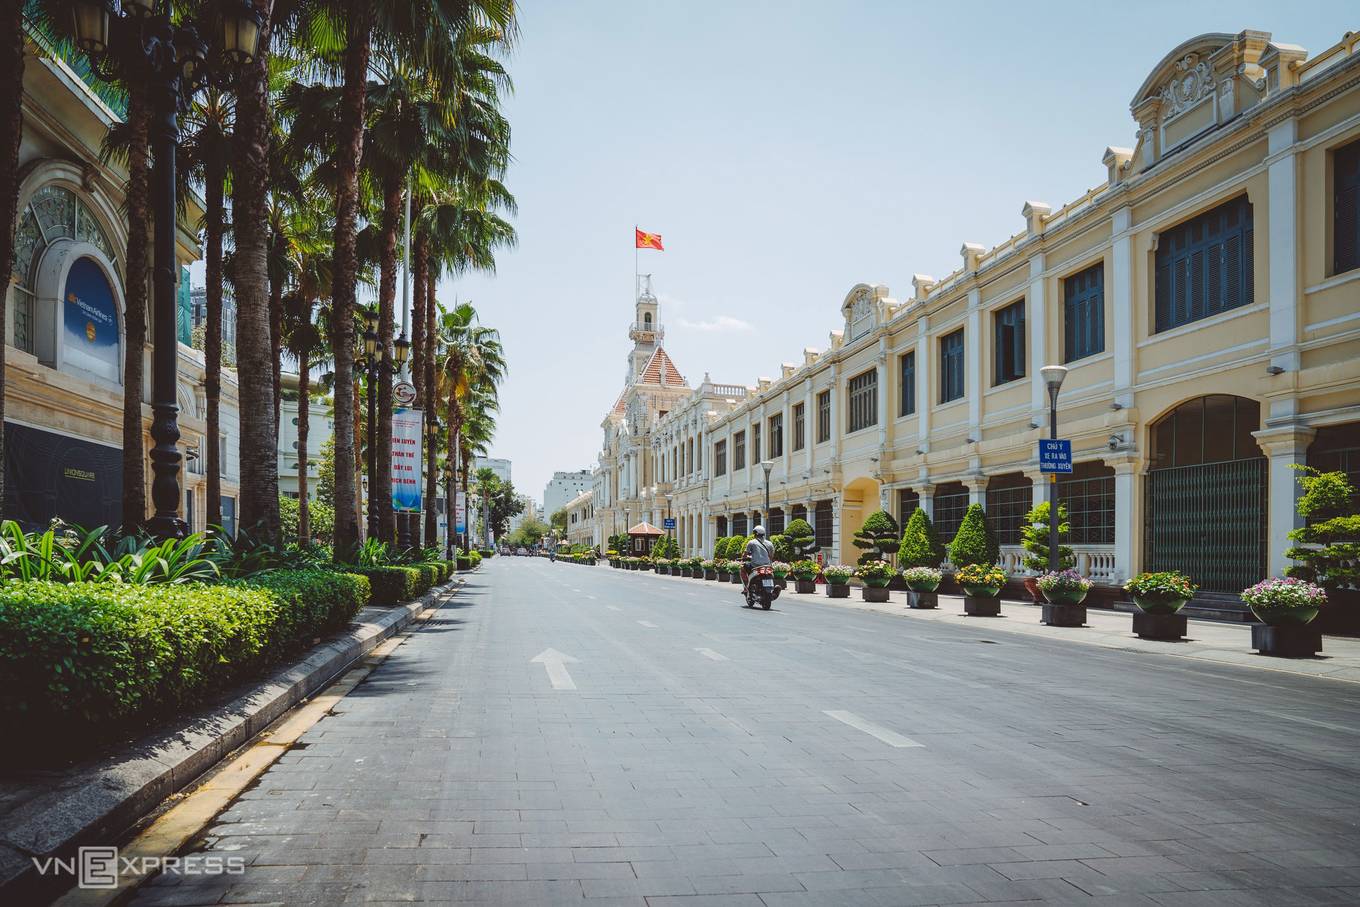 Đường Lê Thánh Tôn chạy qua mặt trước trụ sở UBND TP HCM, quận 1. Trụ sở UBND TP HCM là một trong những công trình kiến trúc cổ điển, mang tính biểu tượng của Sài Gòn, được xây dựng từ năm 1898-1909. Nơi này luôn tấp nập người qua lại từ sáng tới khuya trong ngày thường. 